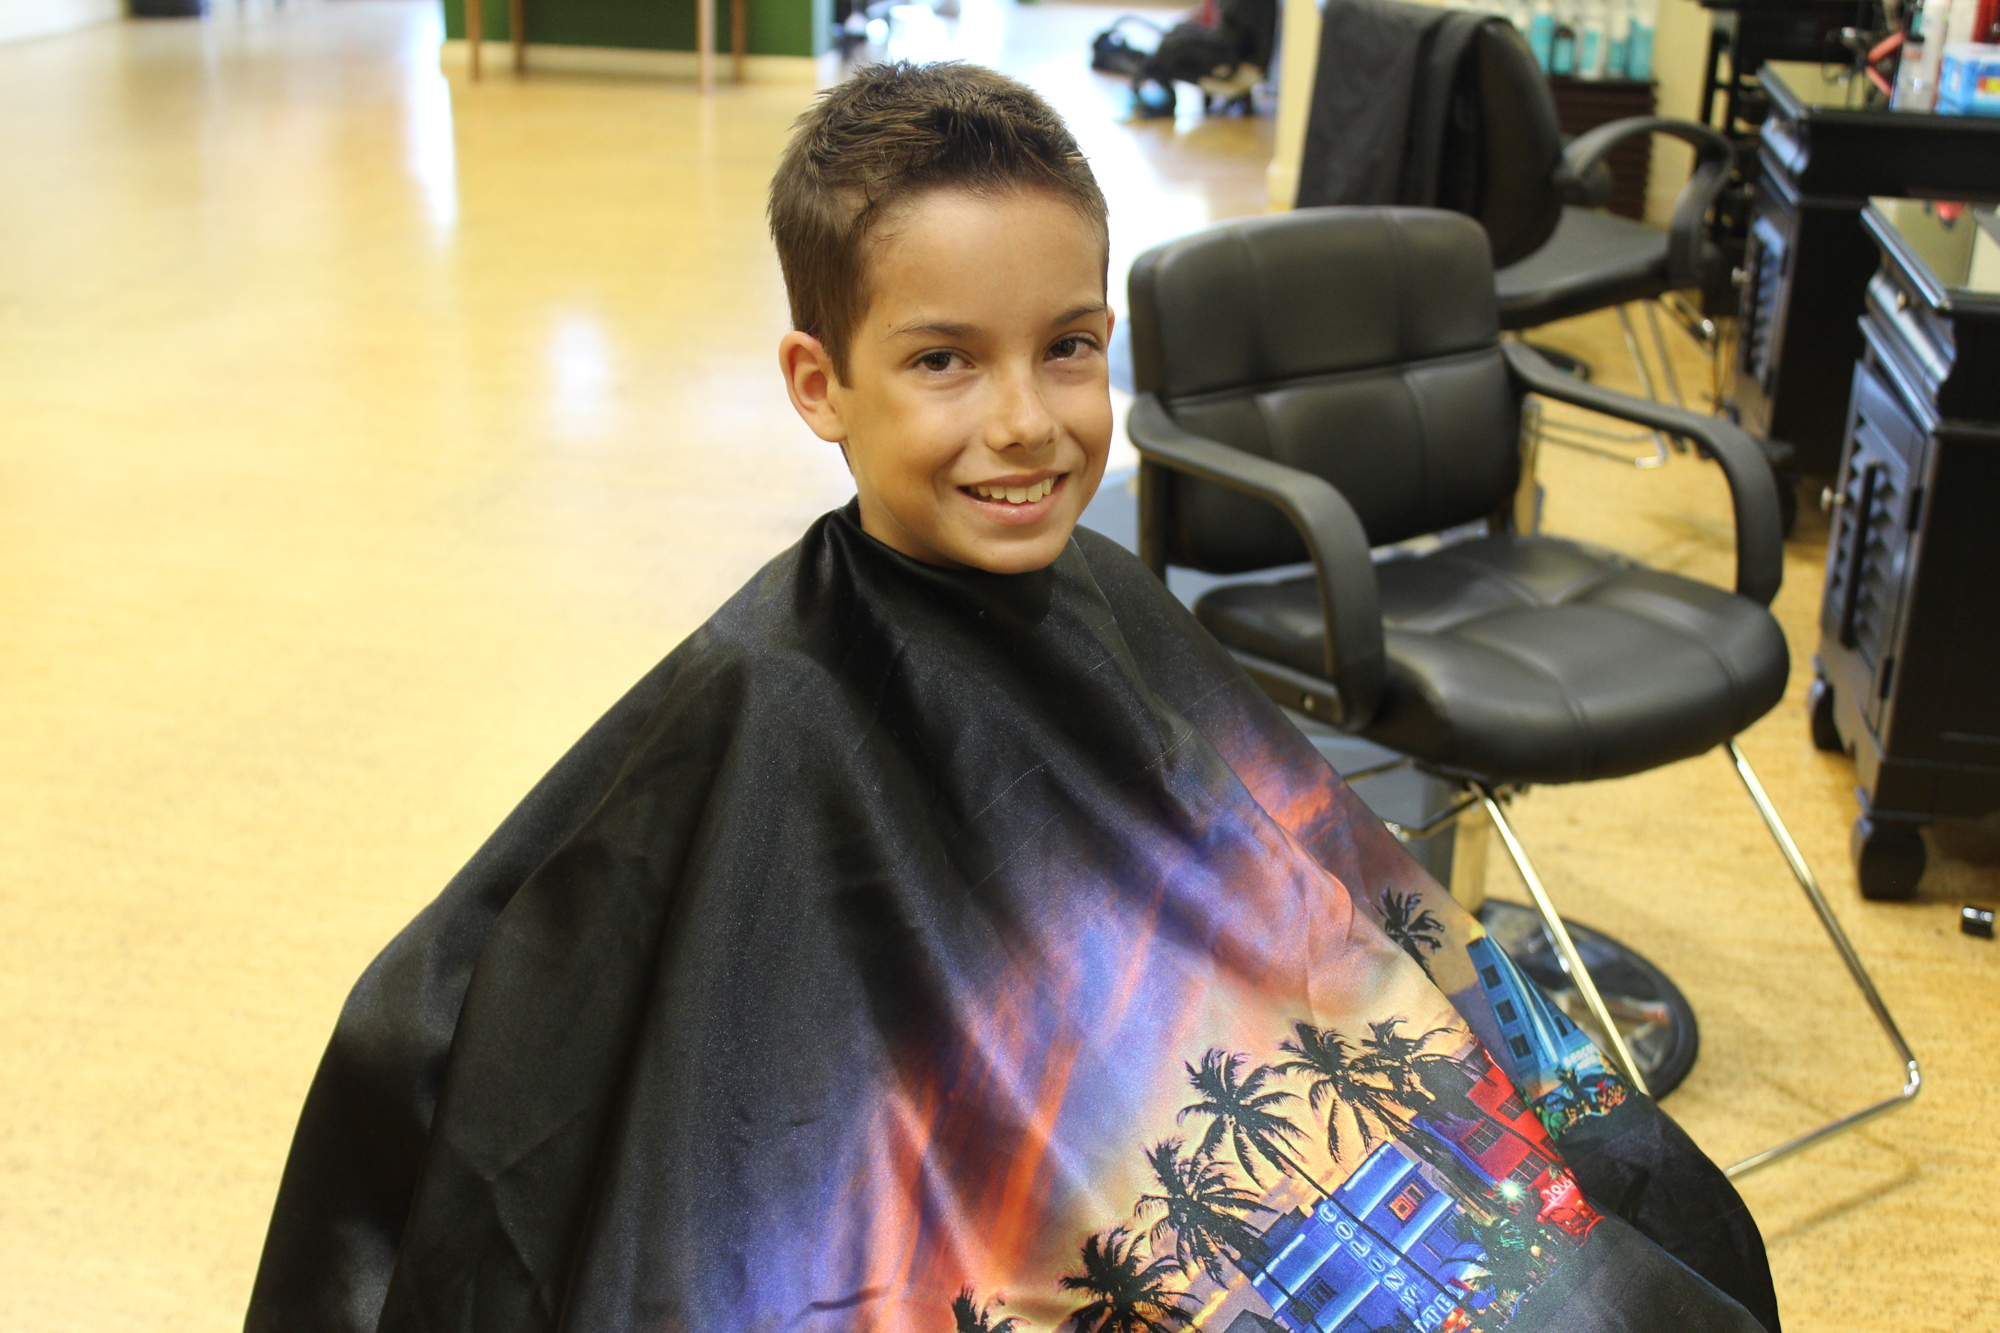 Madera after his haircut at City Look Salon on Oct. 6. Photo by Jarleene Almenas